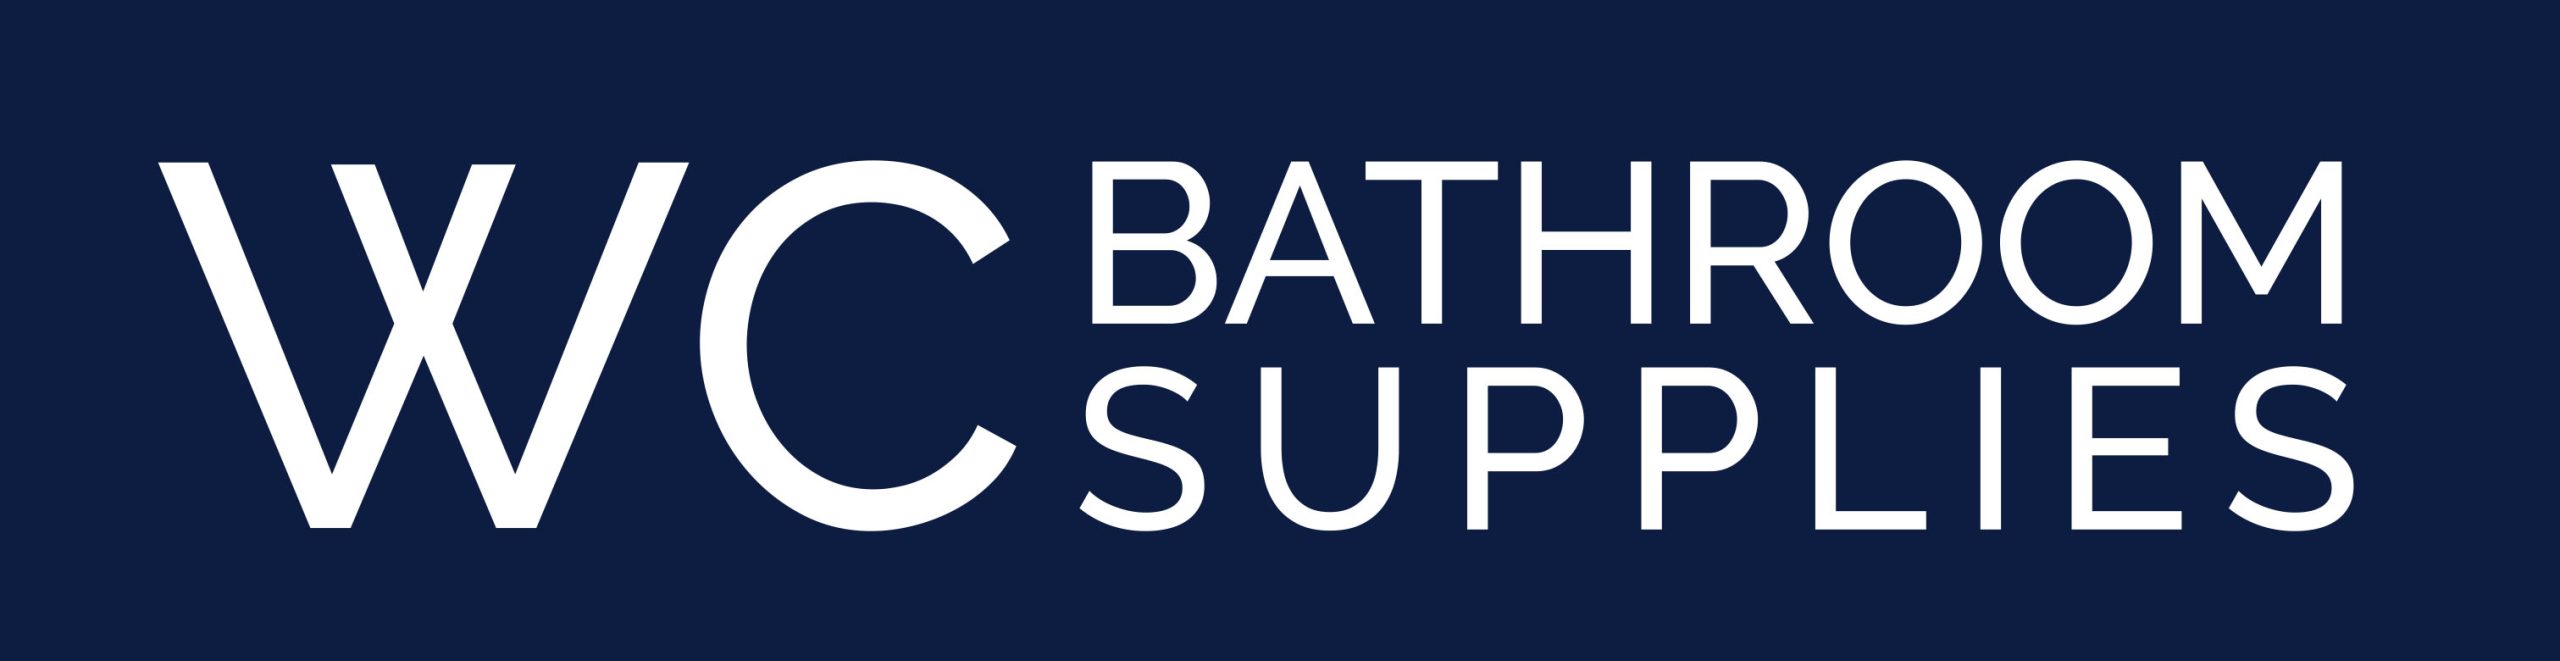 WC BATHROOM Supplies Logo White